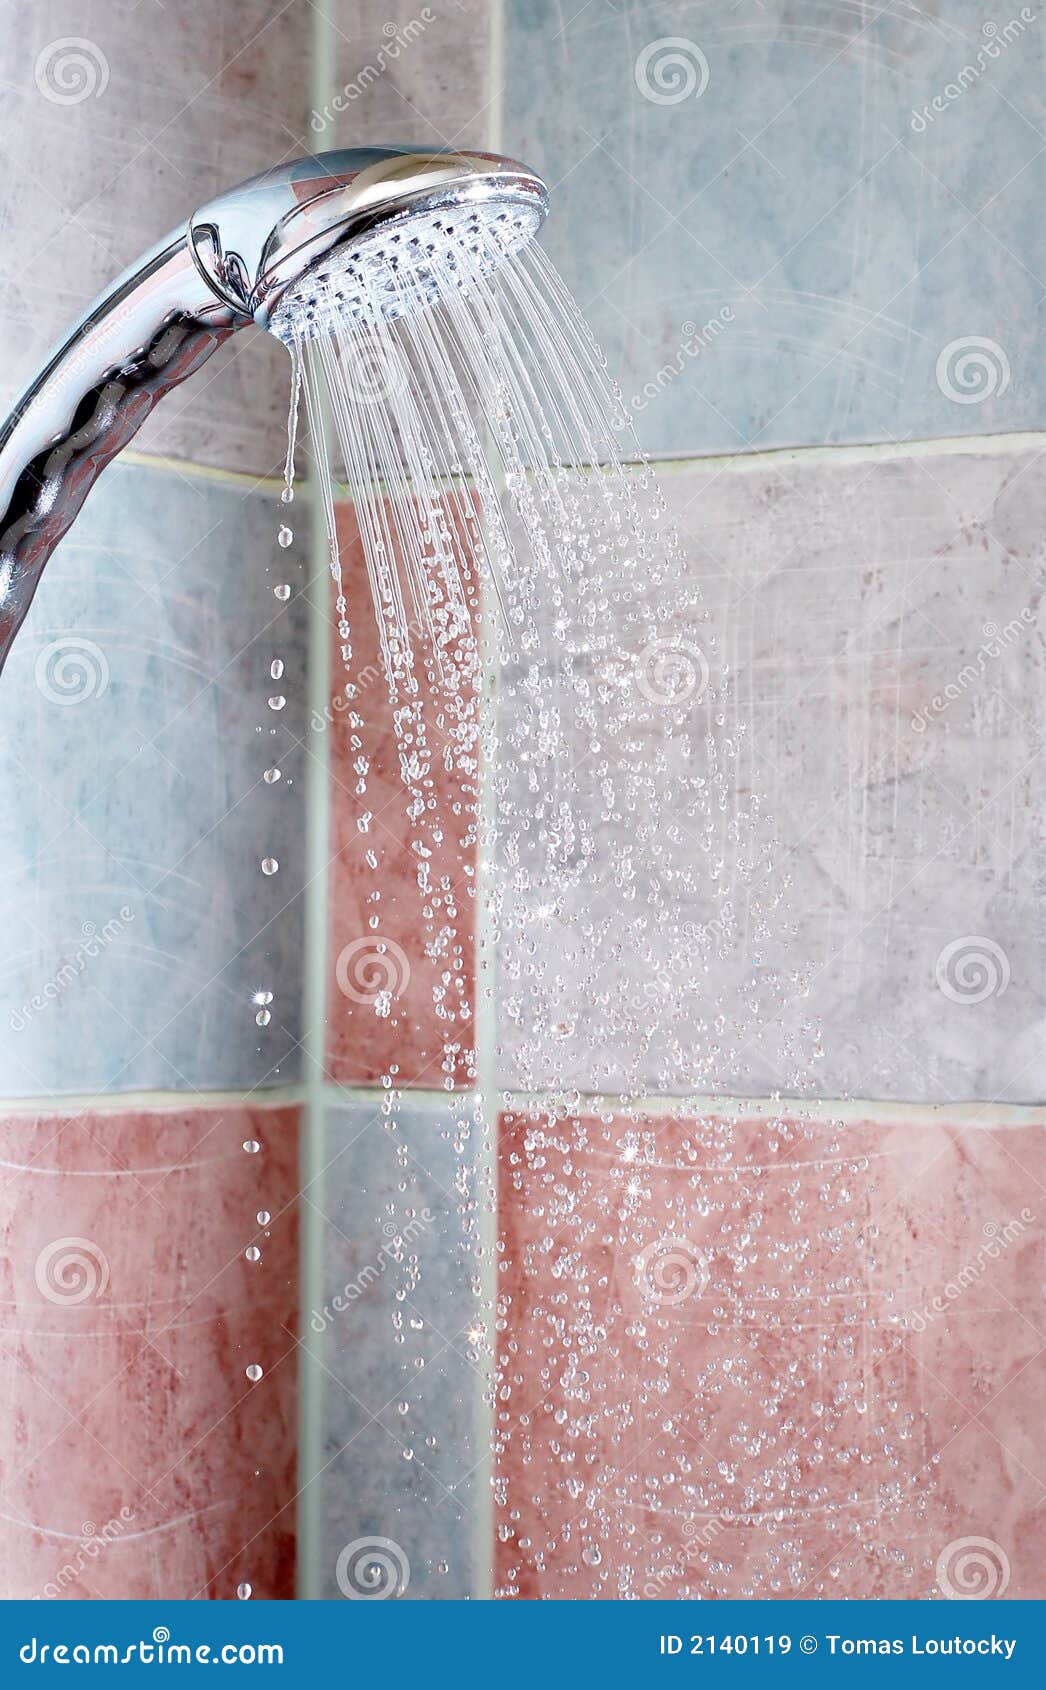 Foto van de douche van het chroommetaal.